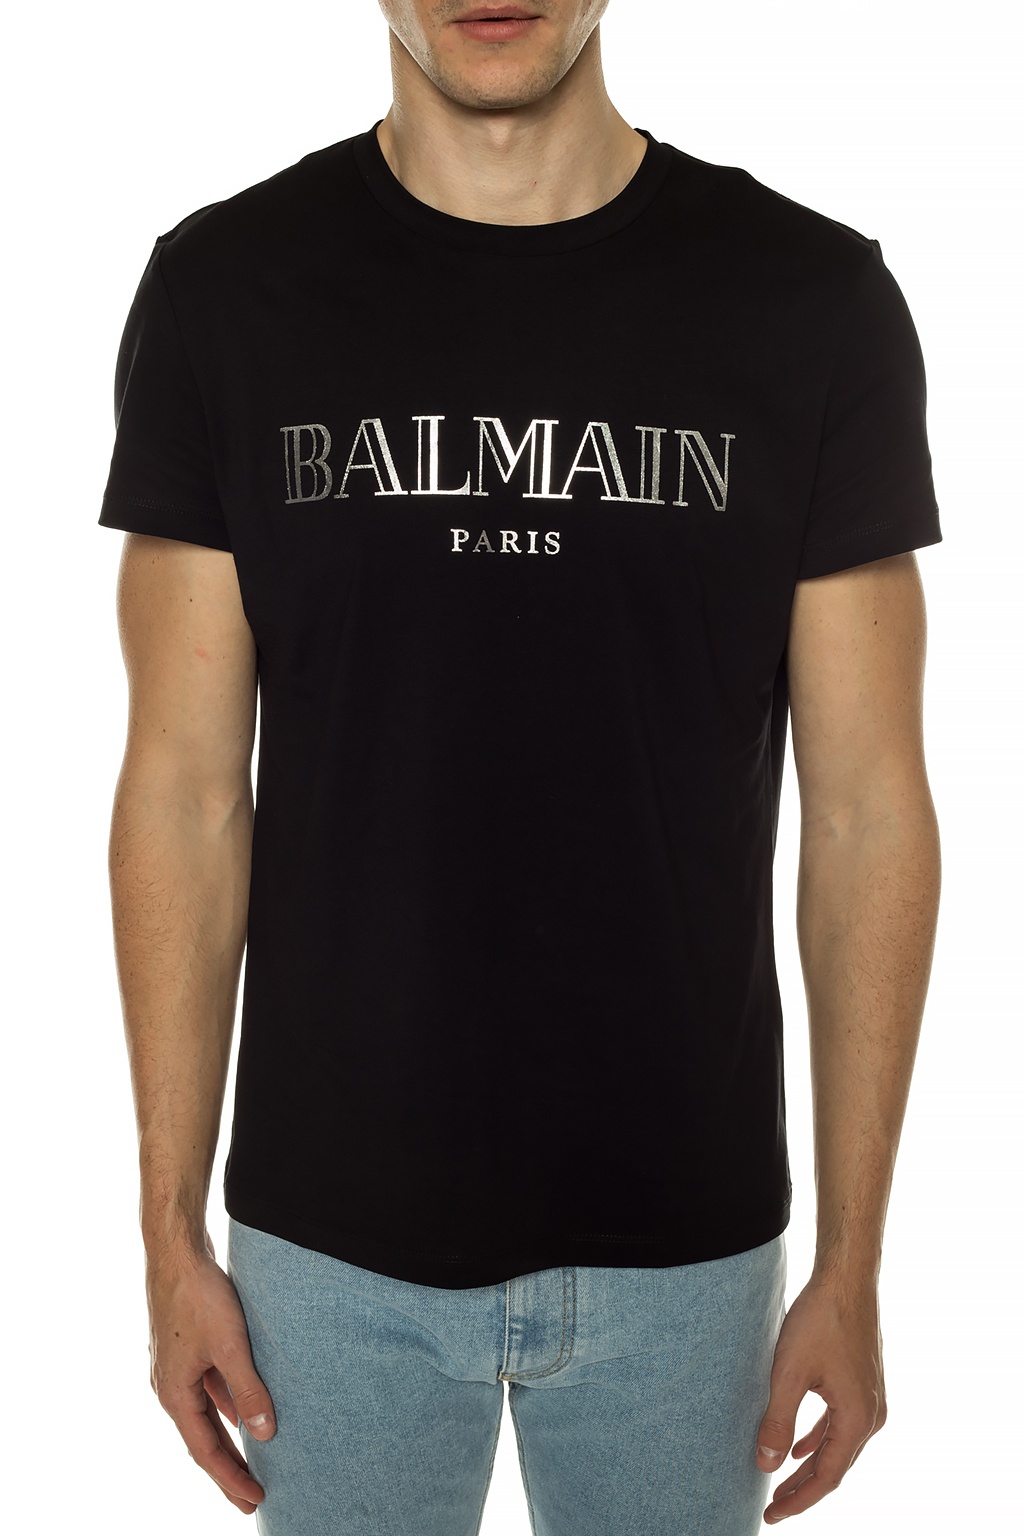 balmain shirt price india